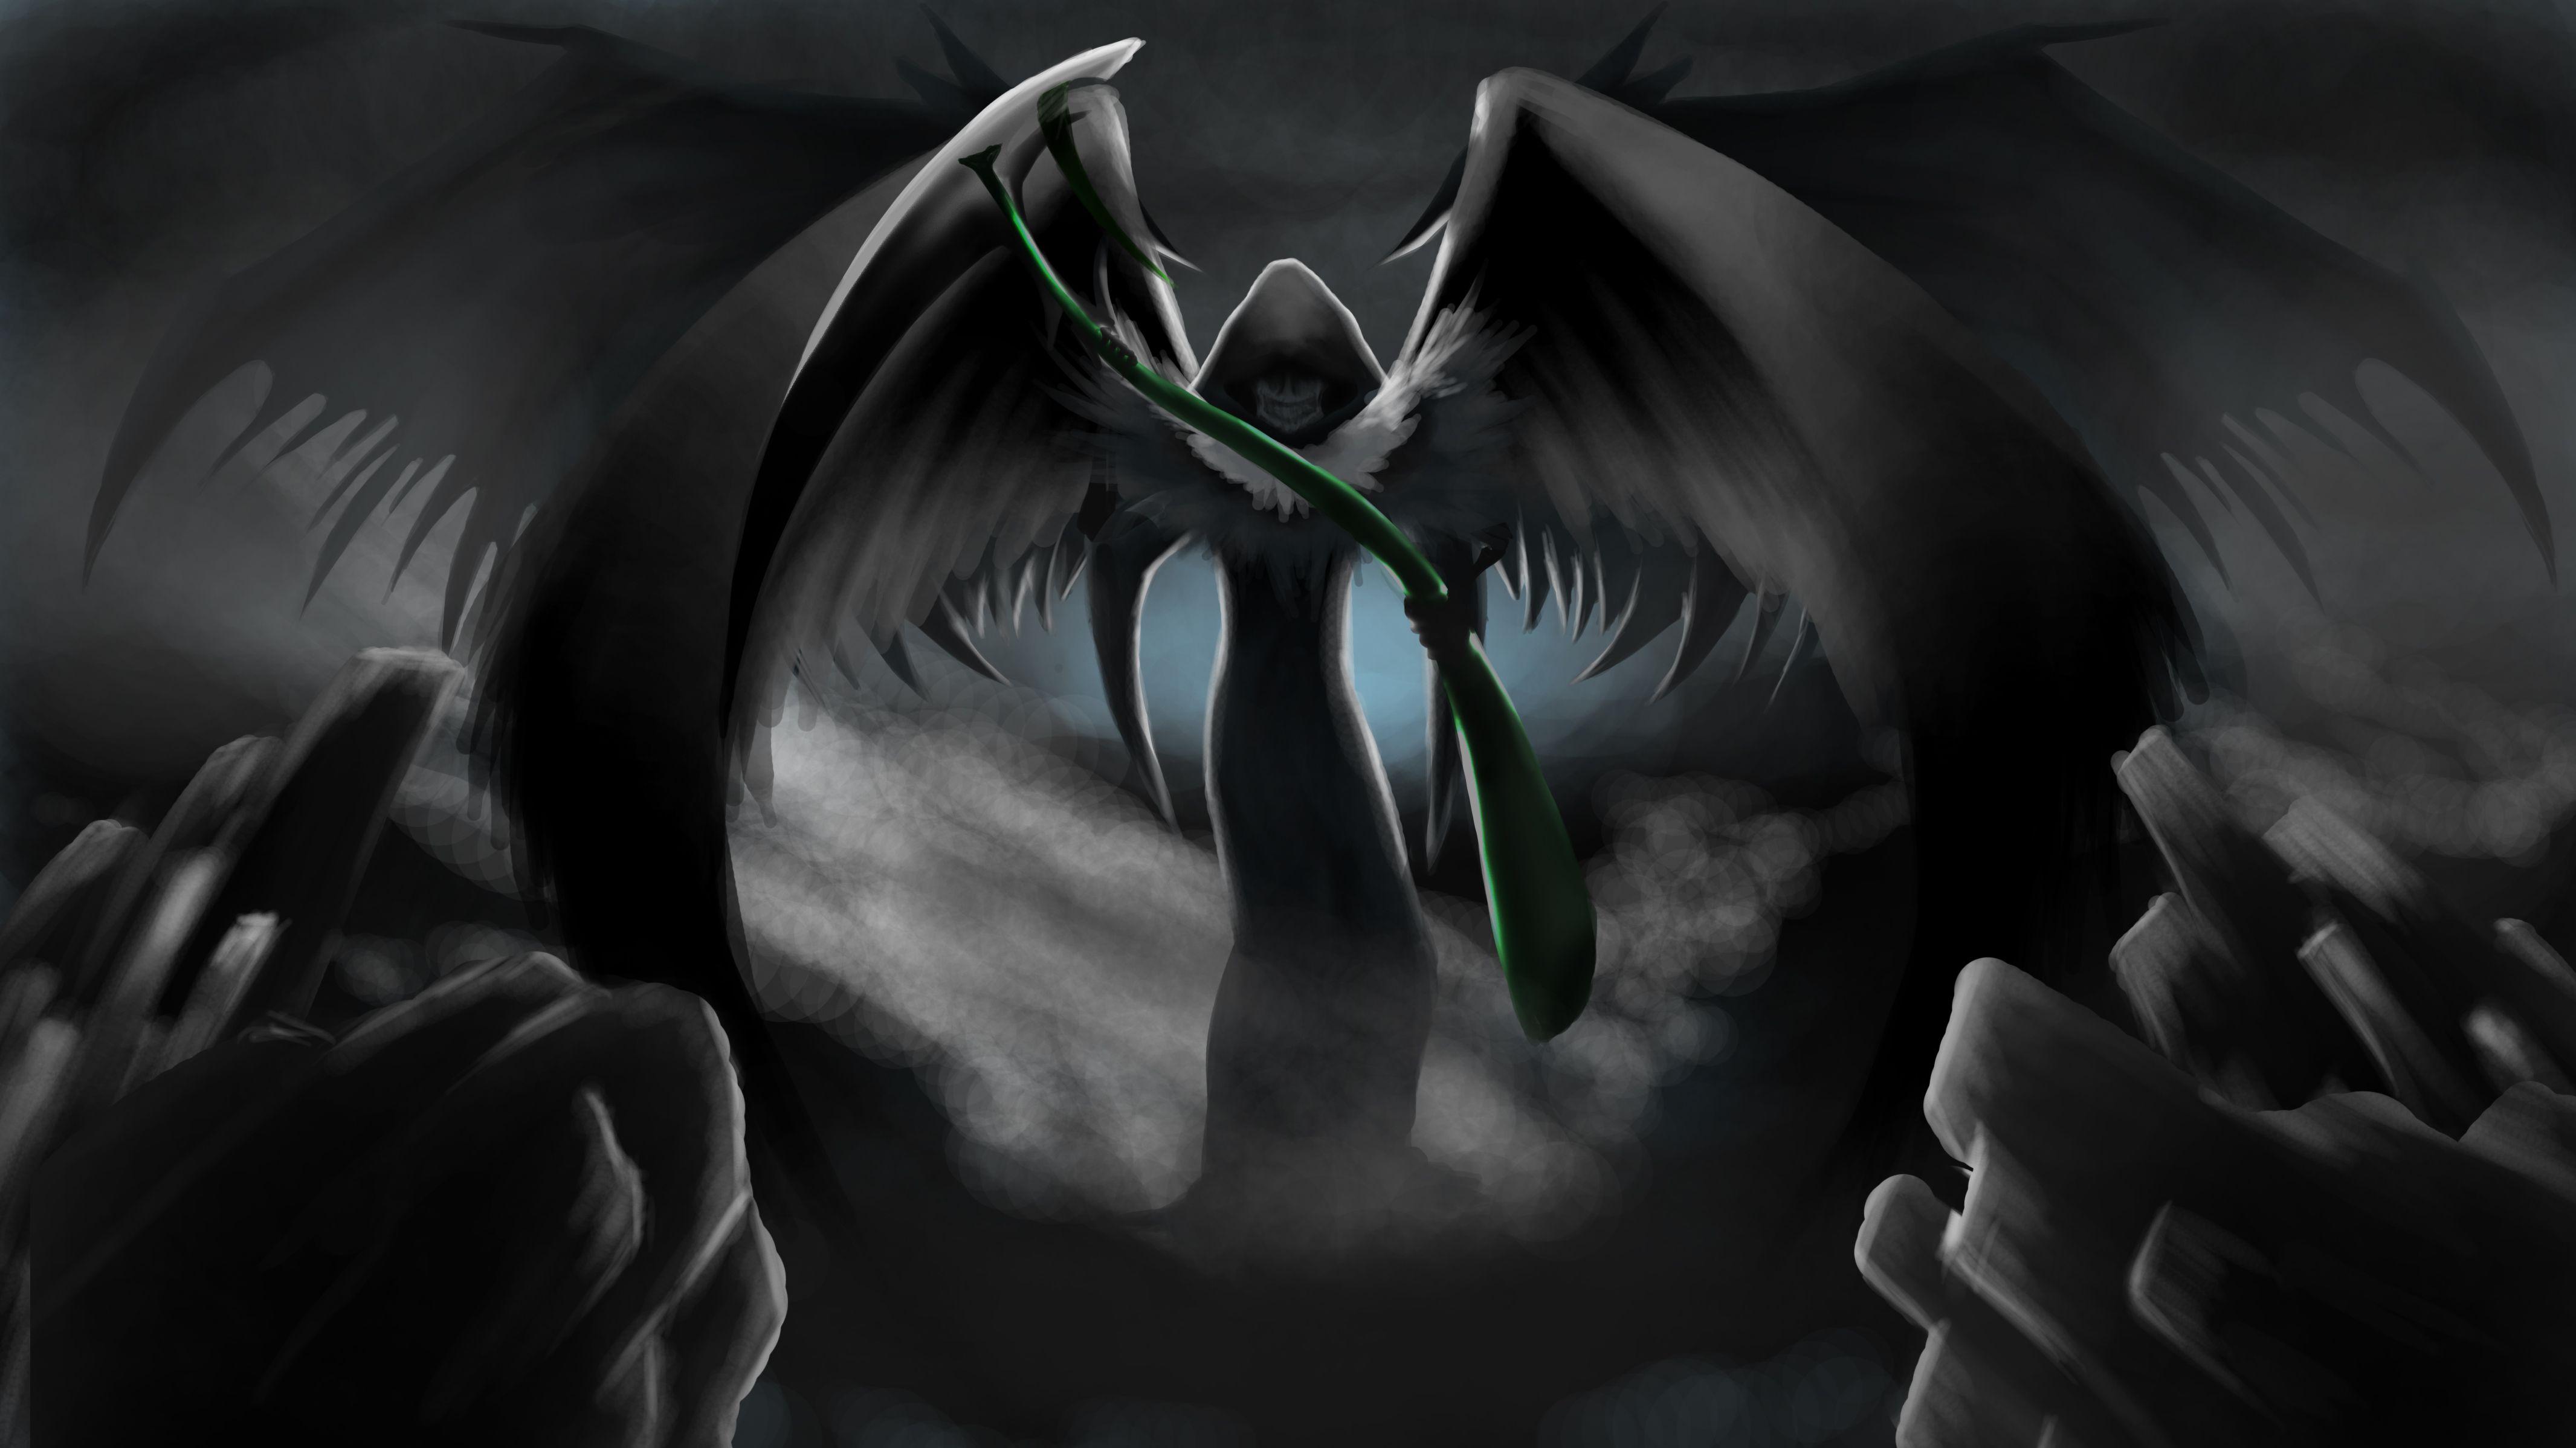 Cool Grim Reaper Wallpaper. Grim Reaper with Wings. Grim Reaper